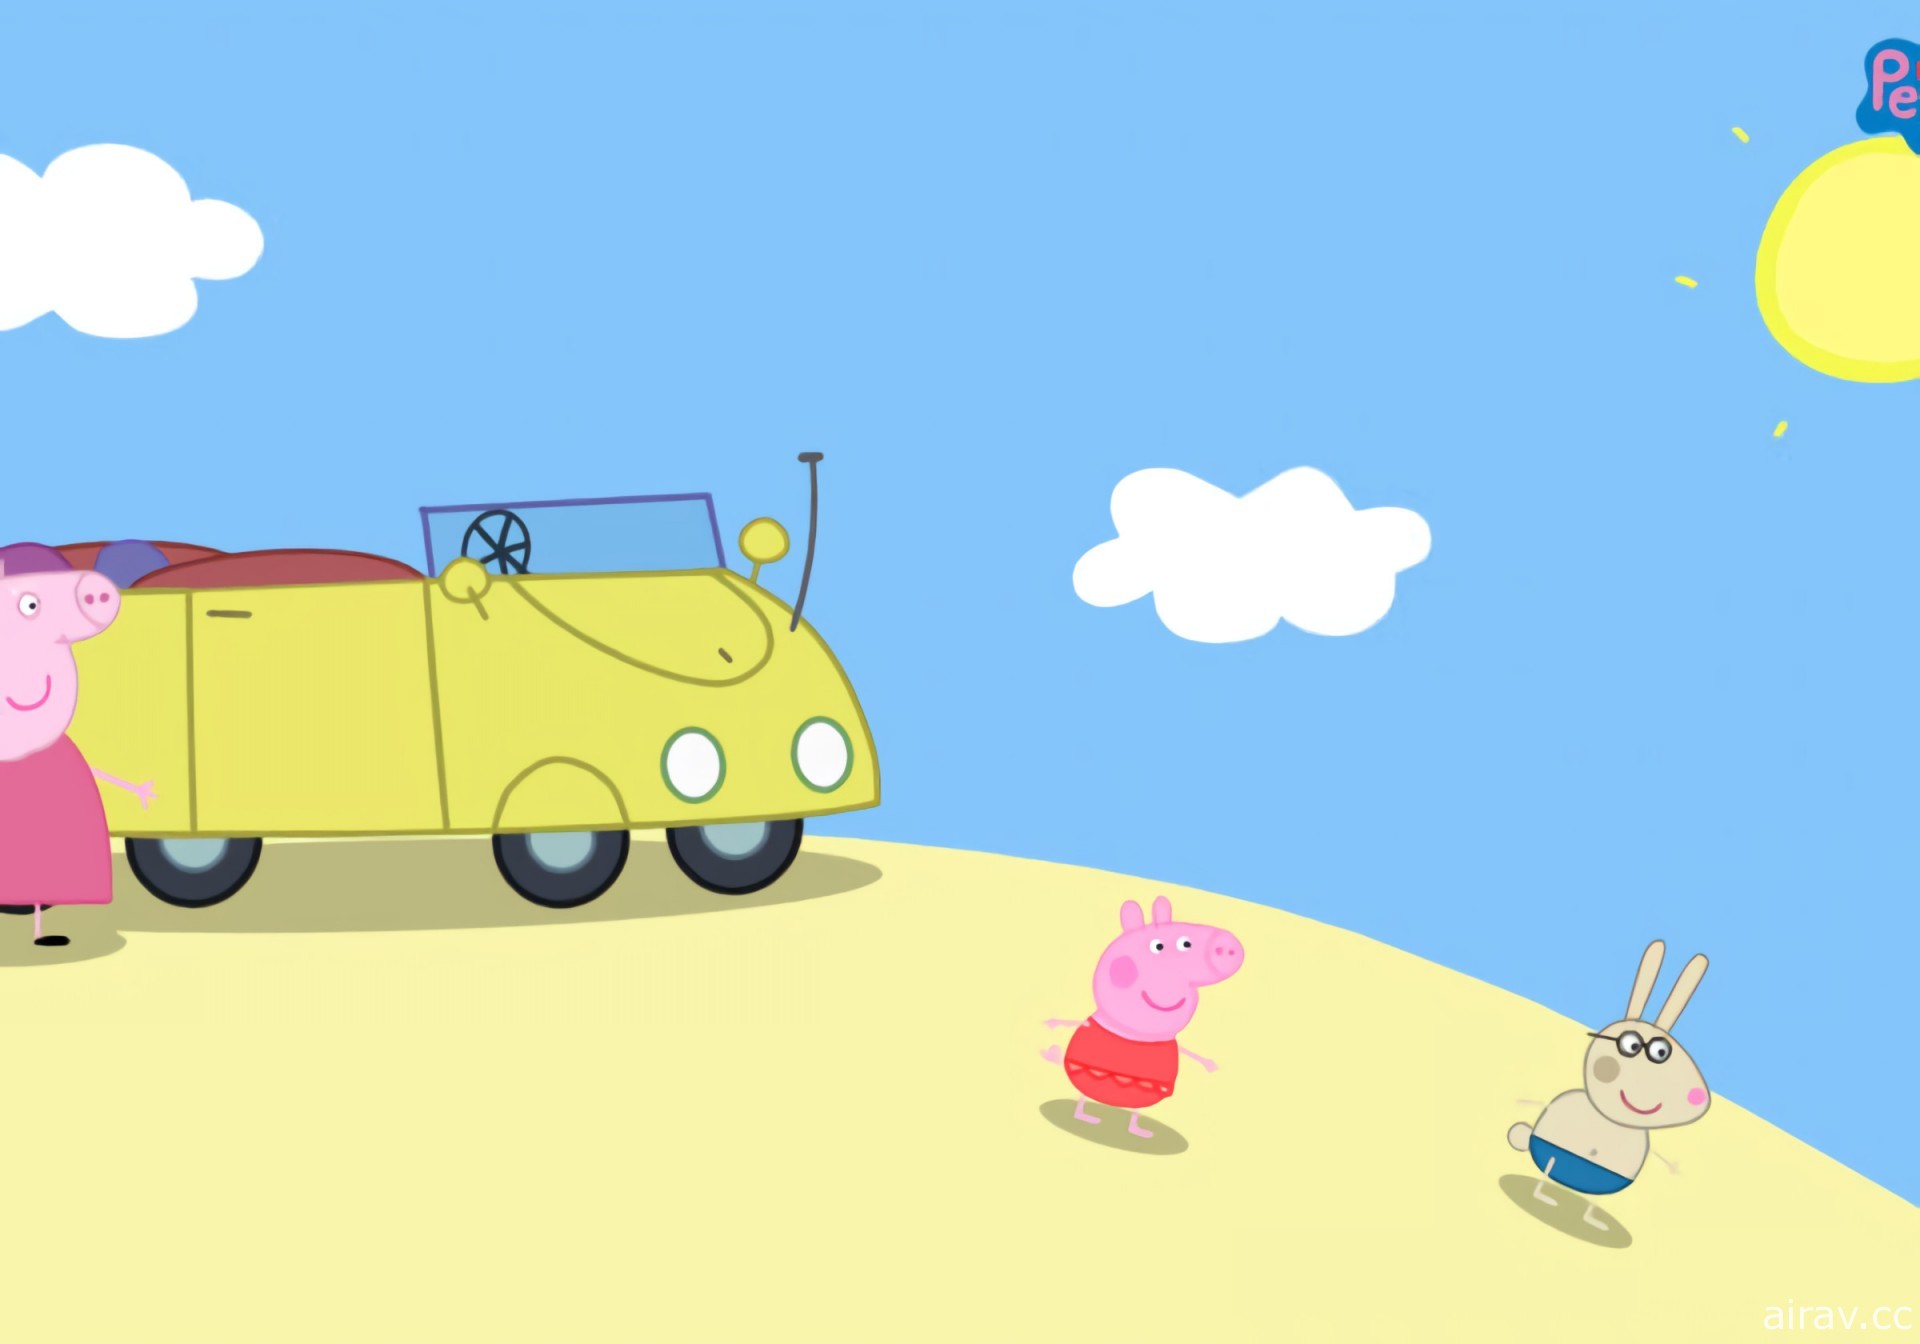 《我的朋友佩佩豬》釋出實機遊玩宣傳影片 與佩佩豬一起展開童趣大冒險